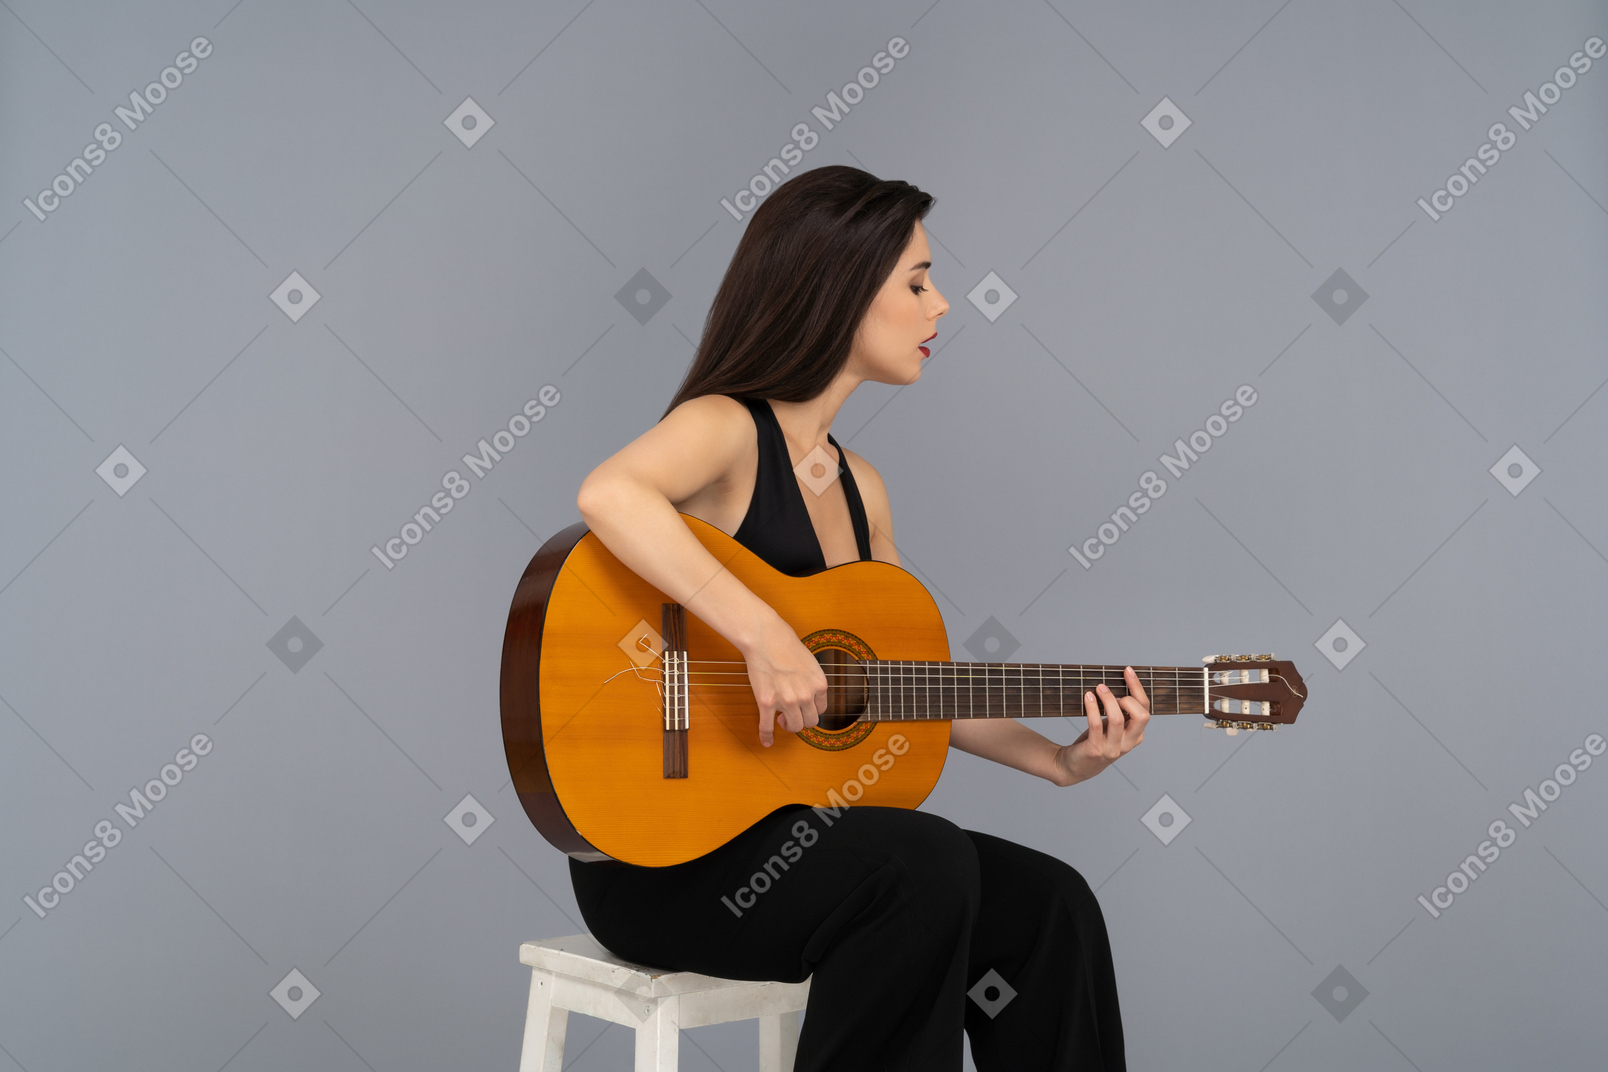 닫힌 된 눈으로 기타를 연주하는 아름 다운 여자